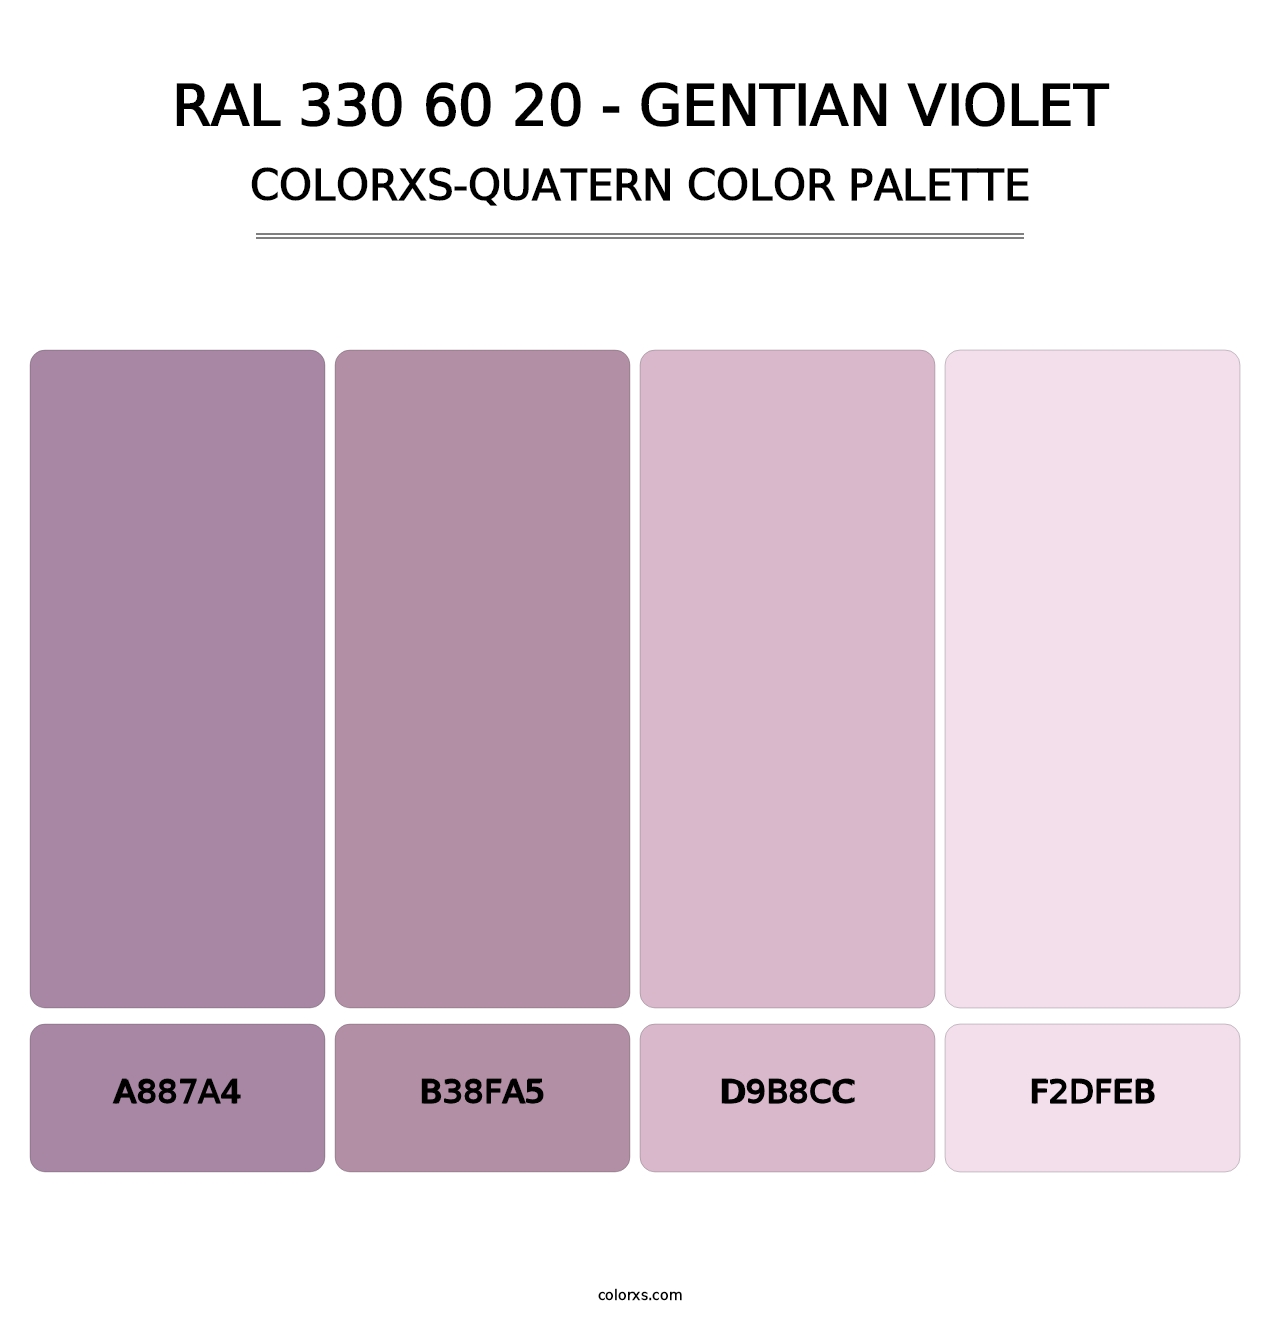 RAL 330 60 20 - Gentian Violet - Colorxs Quatern Palette